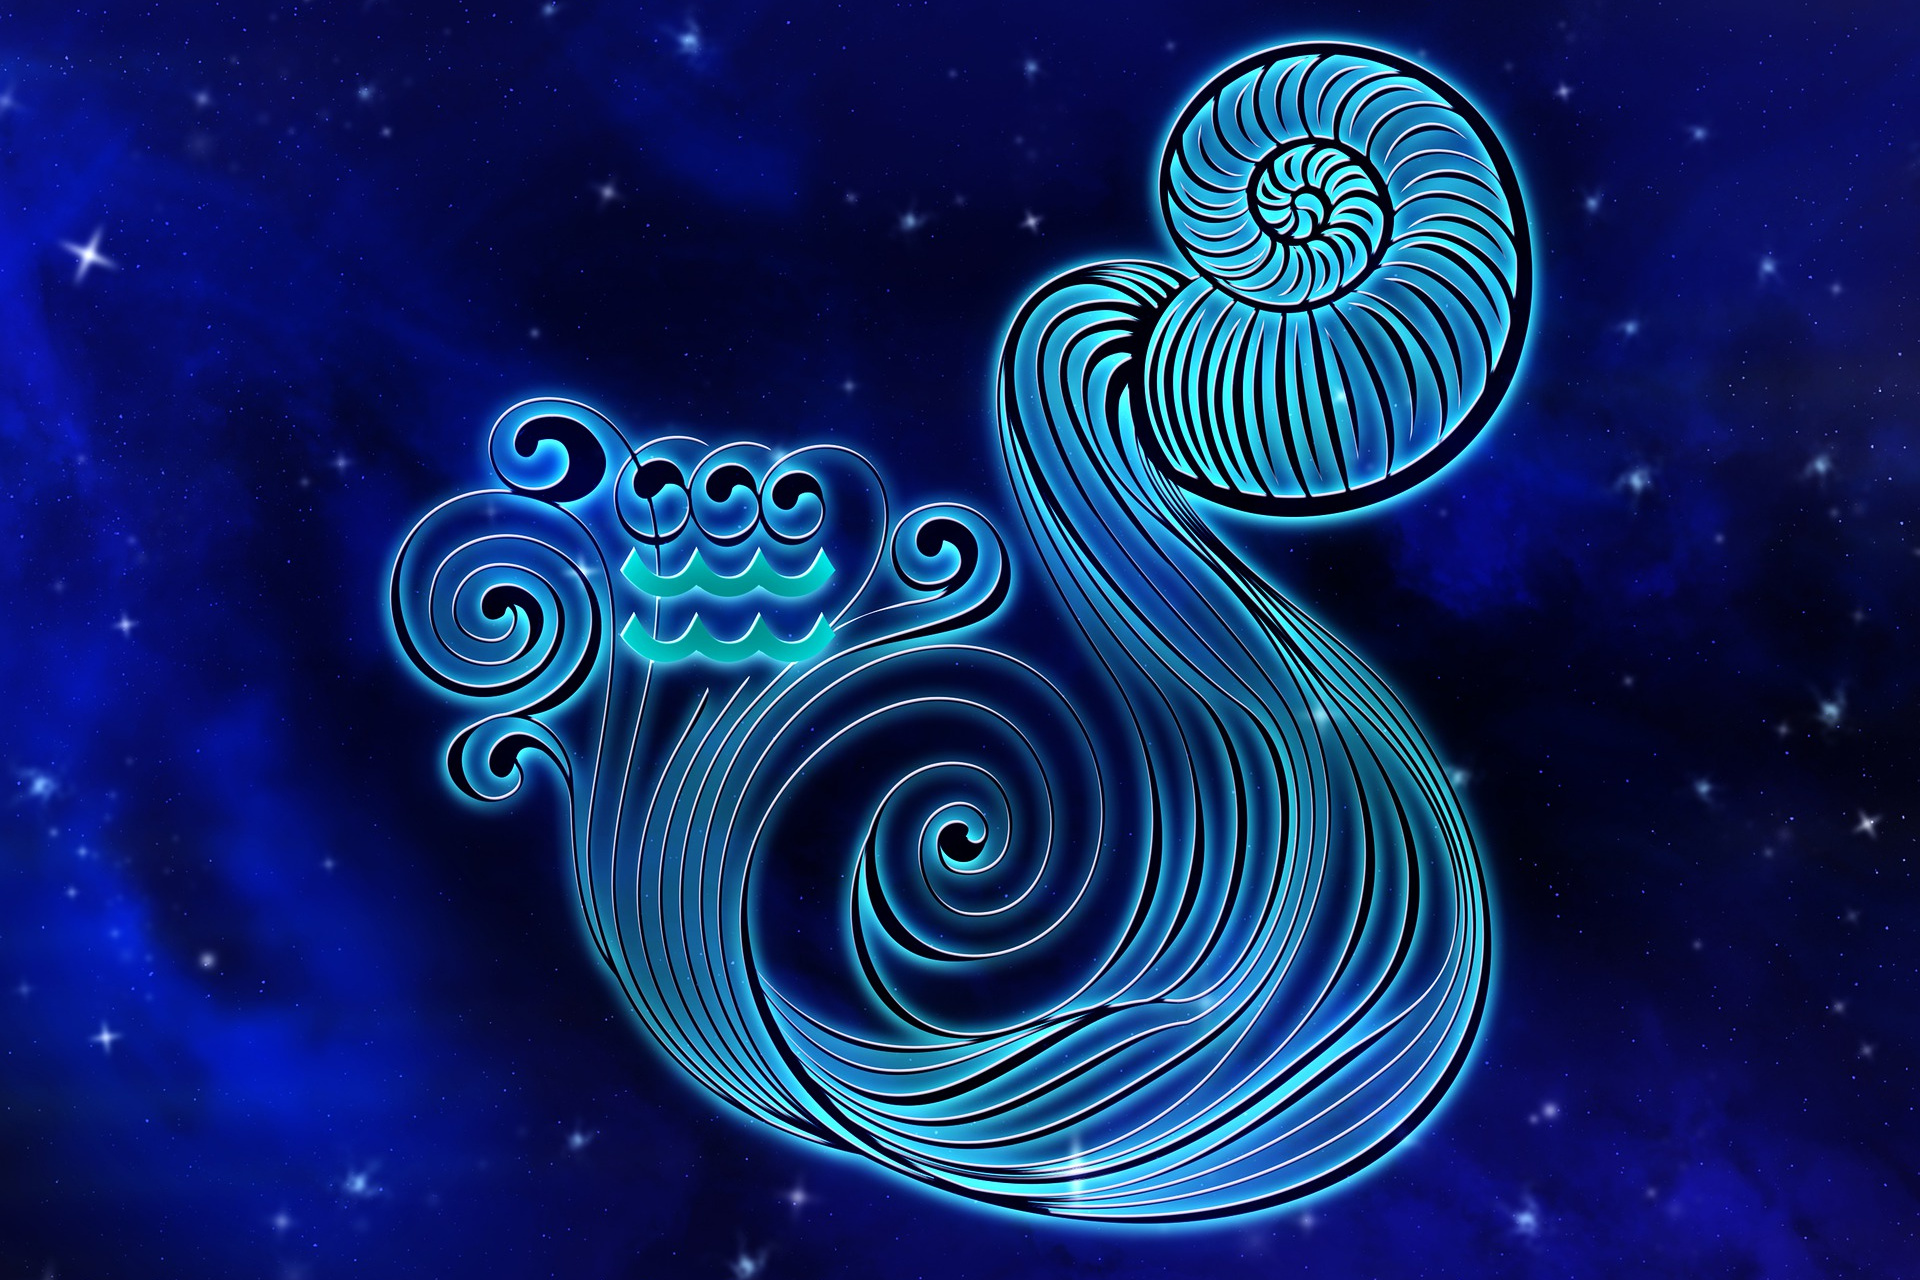 Aquarius (January 21 to February 19)